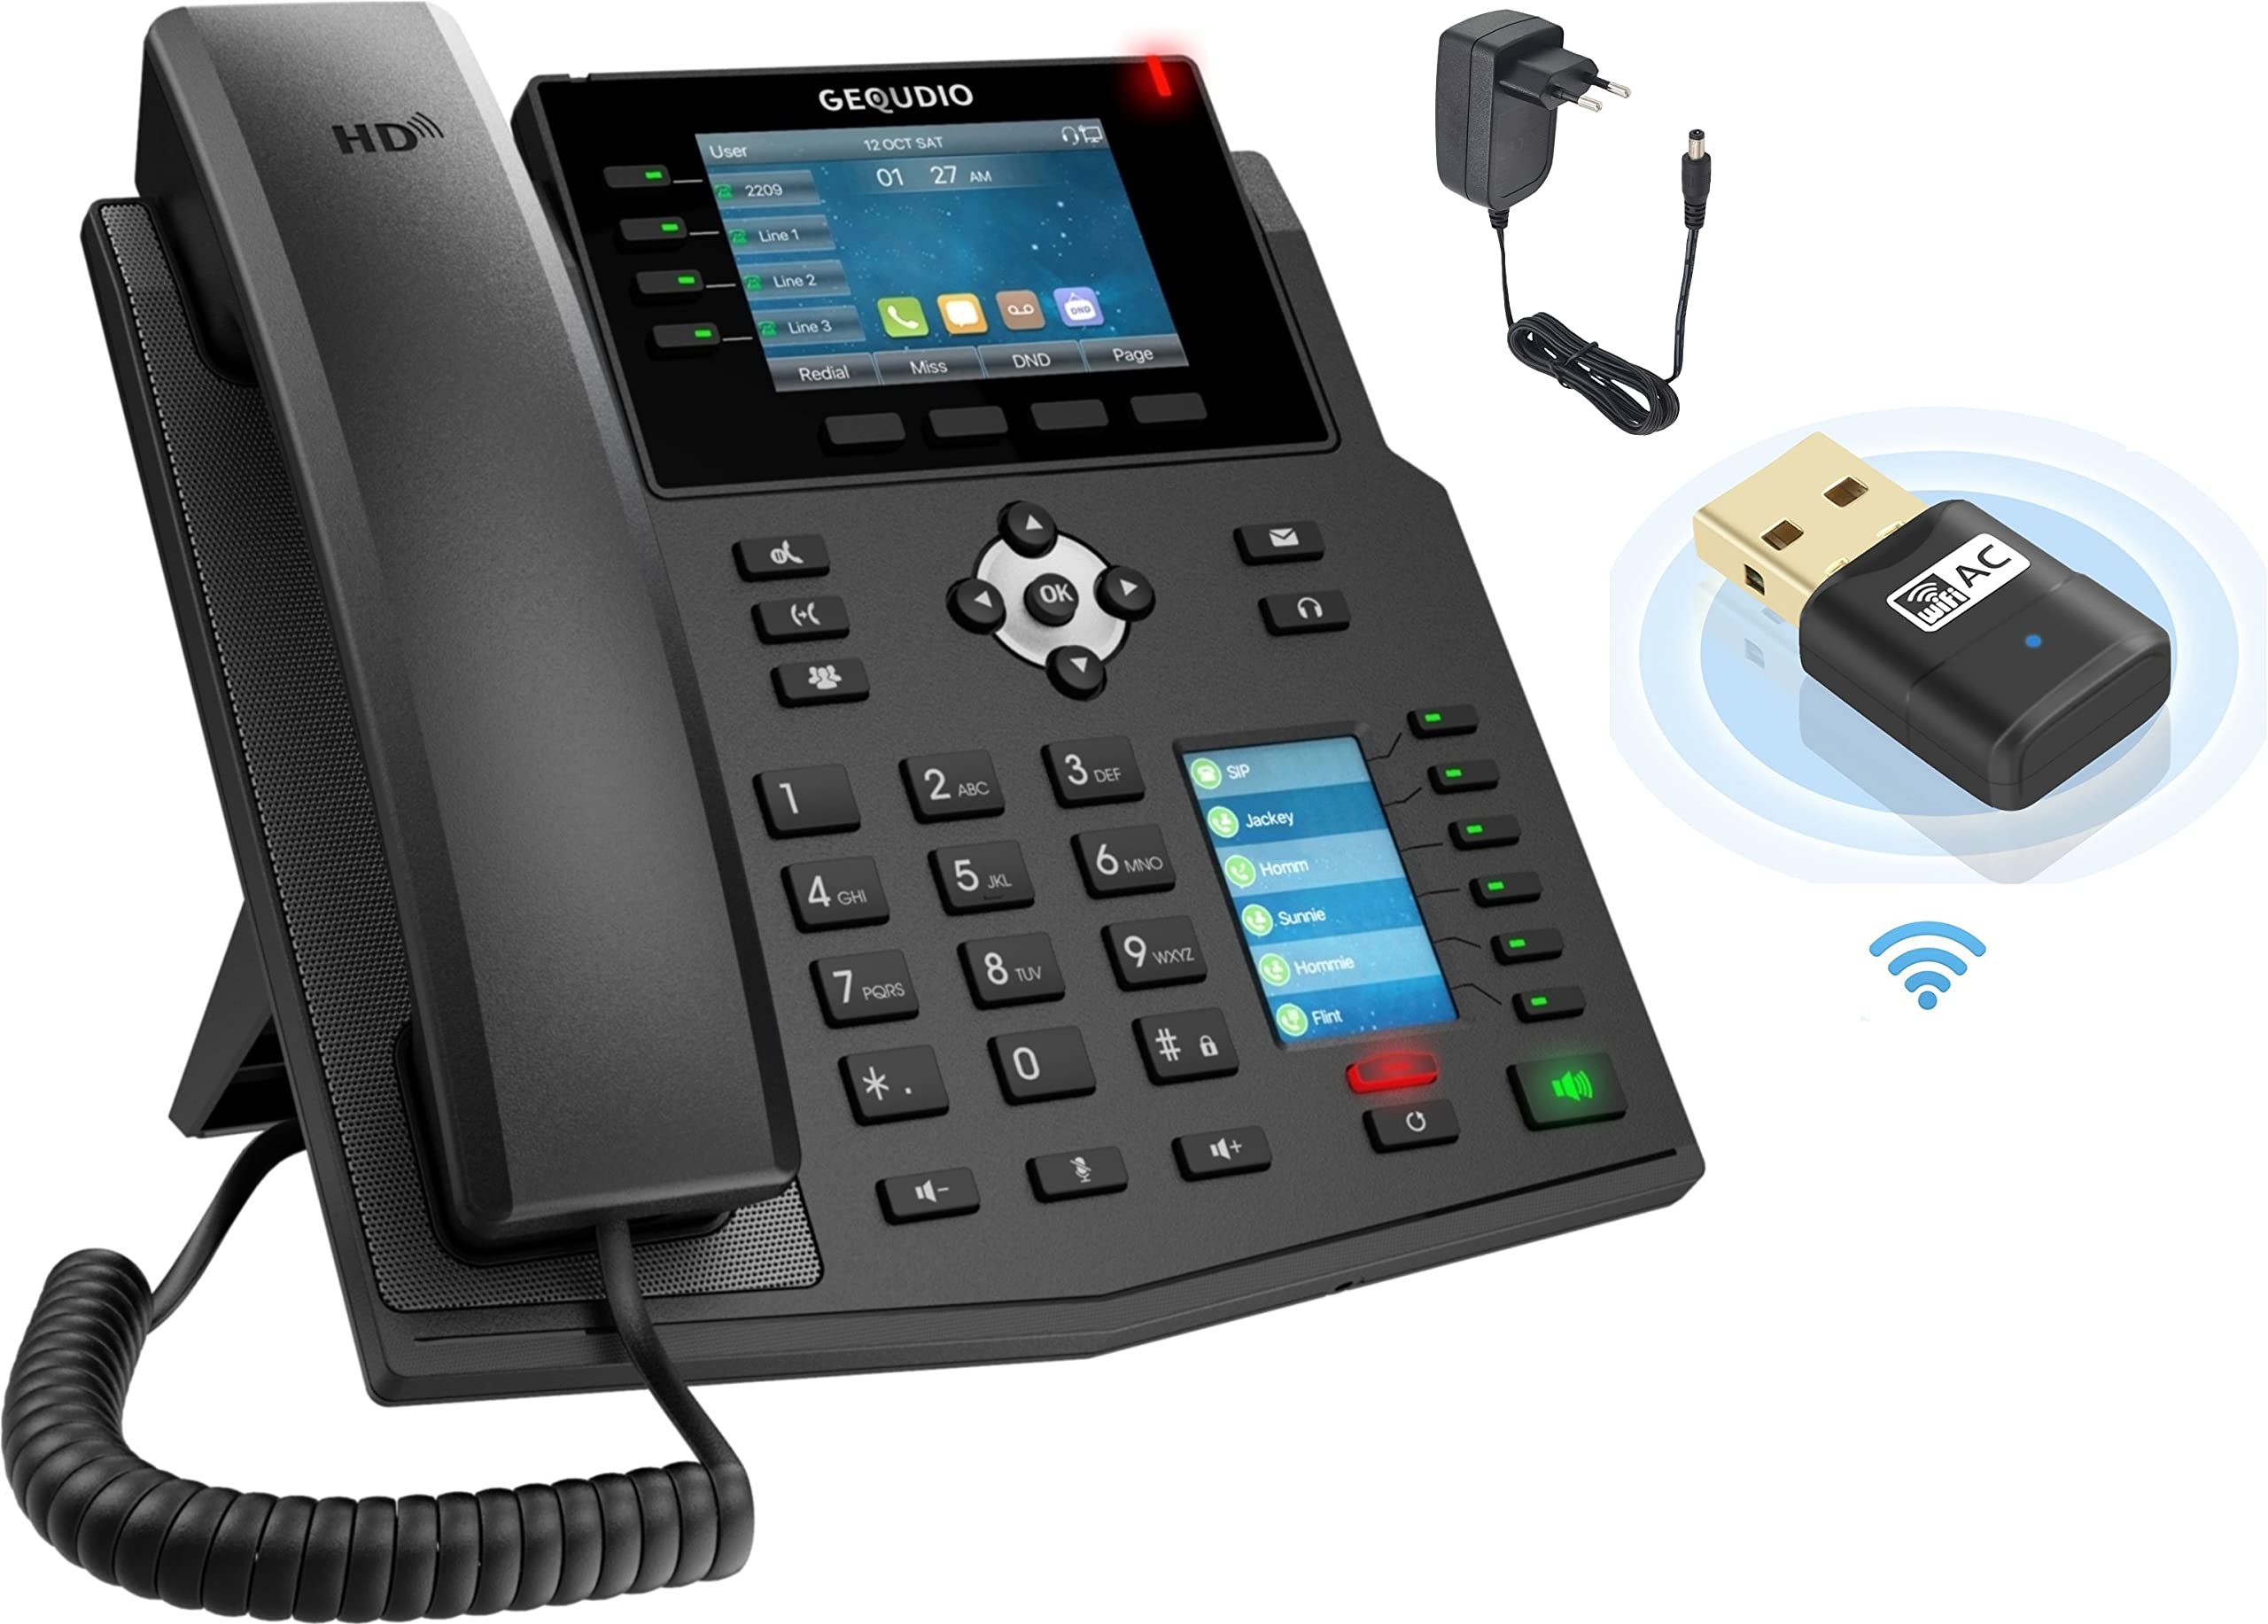 GEQUDIO IP Telefon GX5+ inklusive Netzteil, USB WLAN Stick - Fritzbox, Telekom kompatibel - Premium Freisprechen - Anweisungen für FritzBox, Sipgate, Telekom Digitalisierungsbox, Speedport